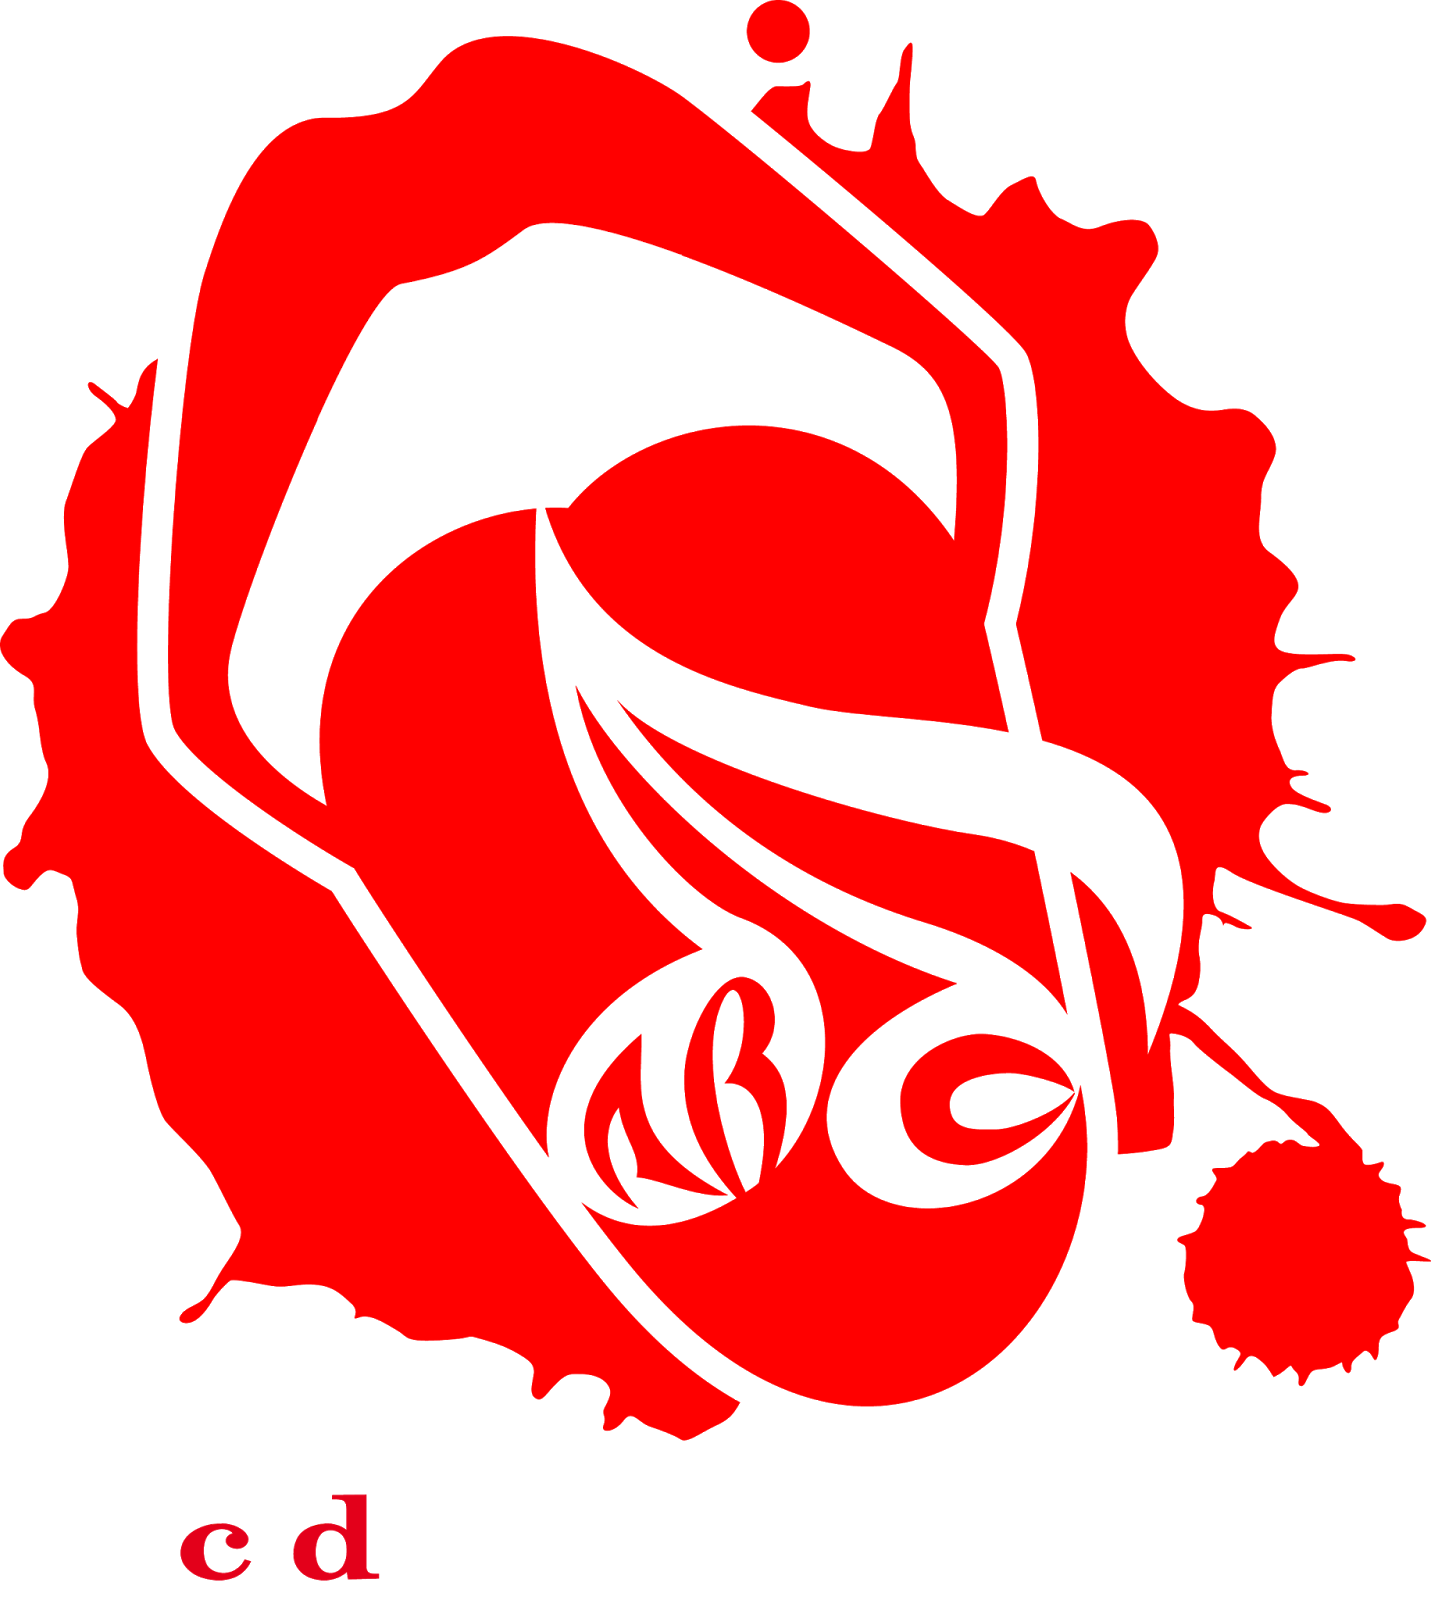 Logodol 全てが高画質 背景透過なアーティストのロゴをお届けするブログ Acid Black Cherry の高画質透過ロゴ５種 キスマークのロゴもあるよ